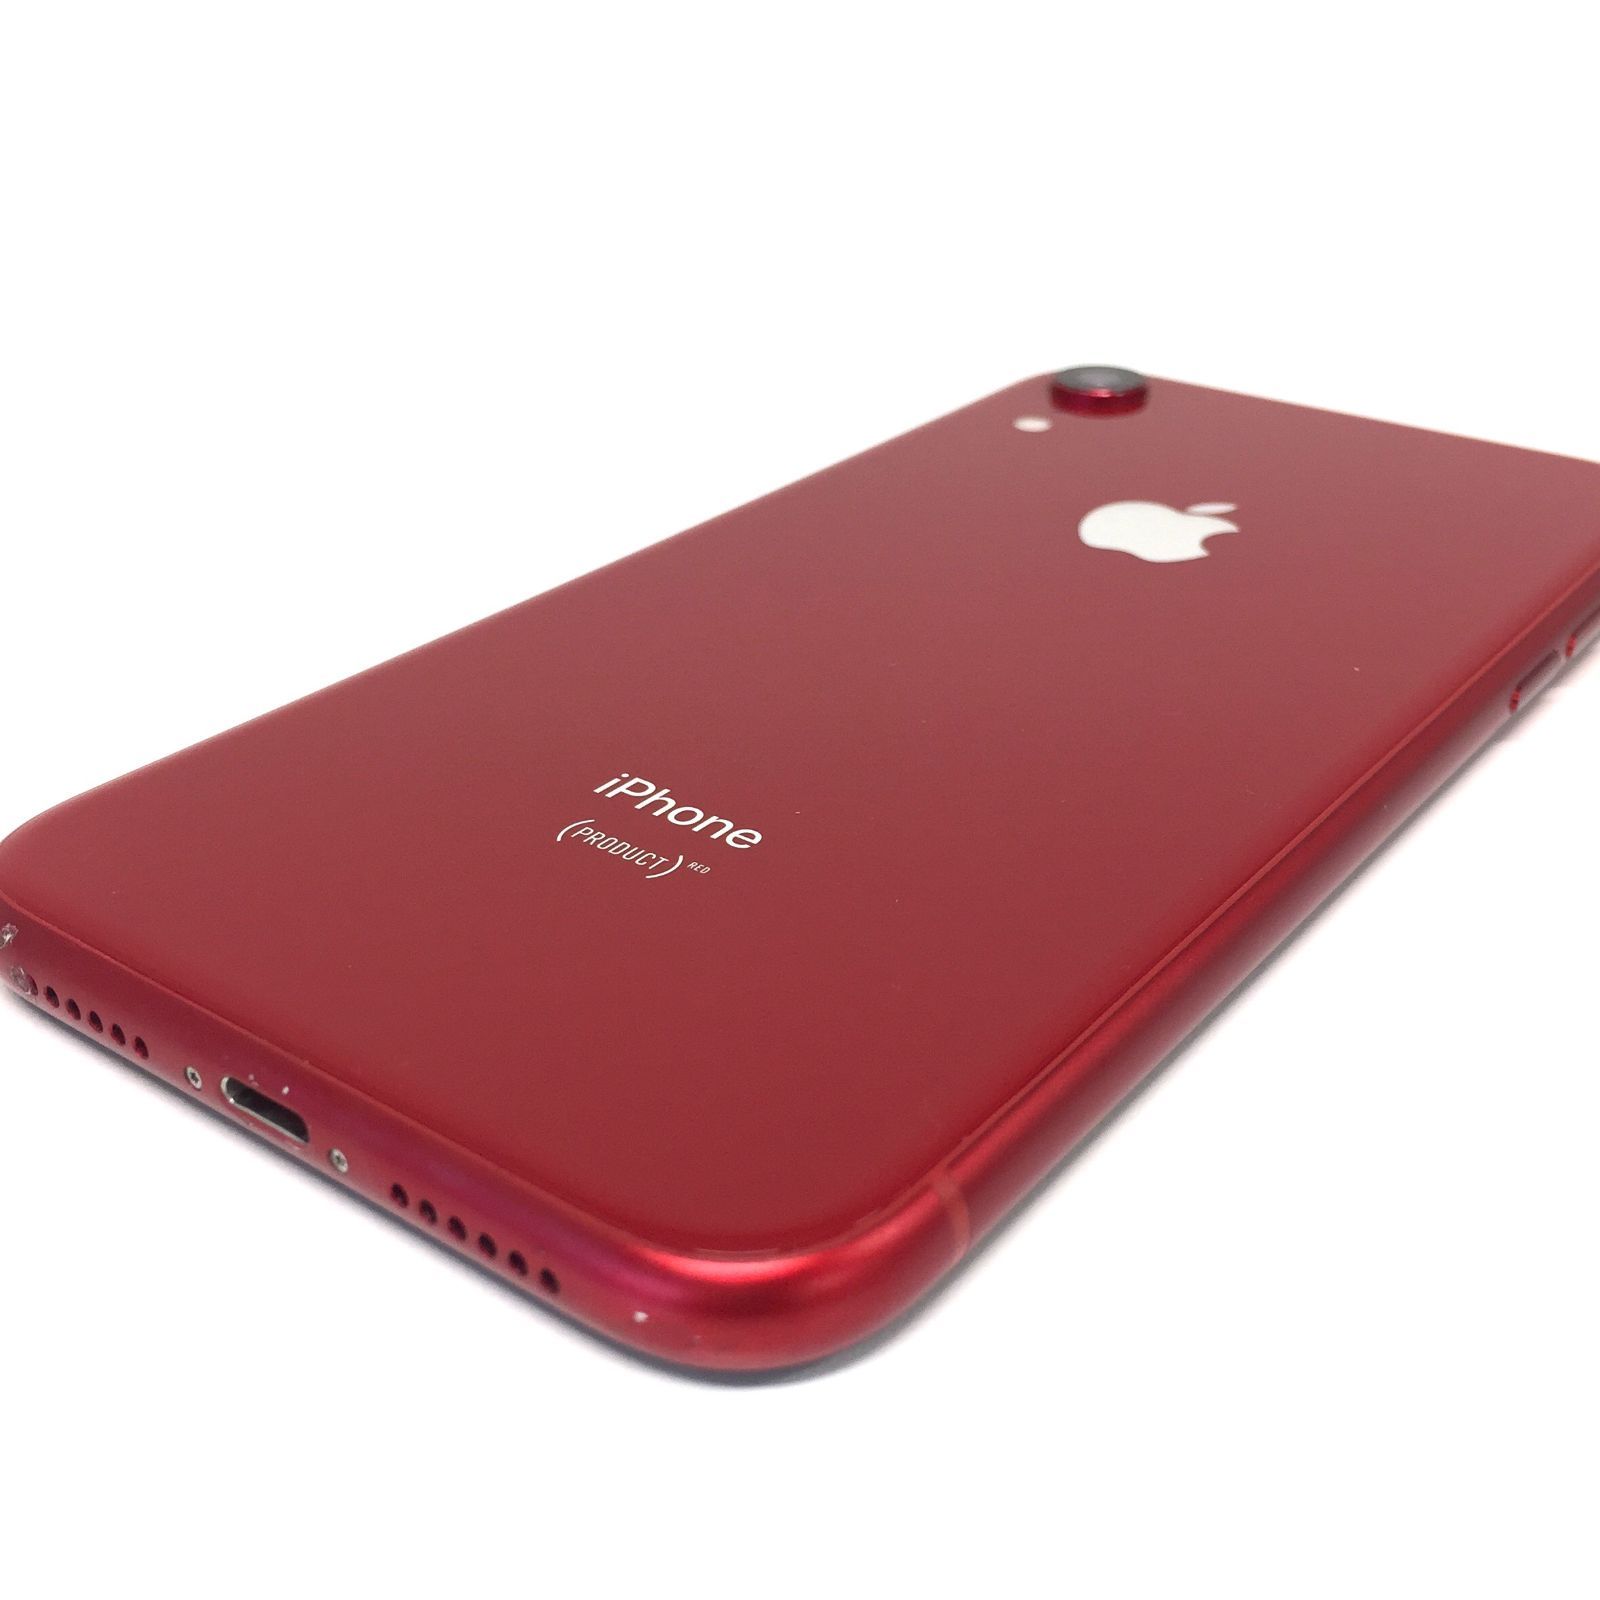 θ【ジャンク品/SIMロック解除済み】iPhone XR 128GB RED - メルカリ